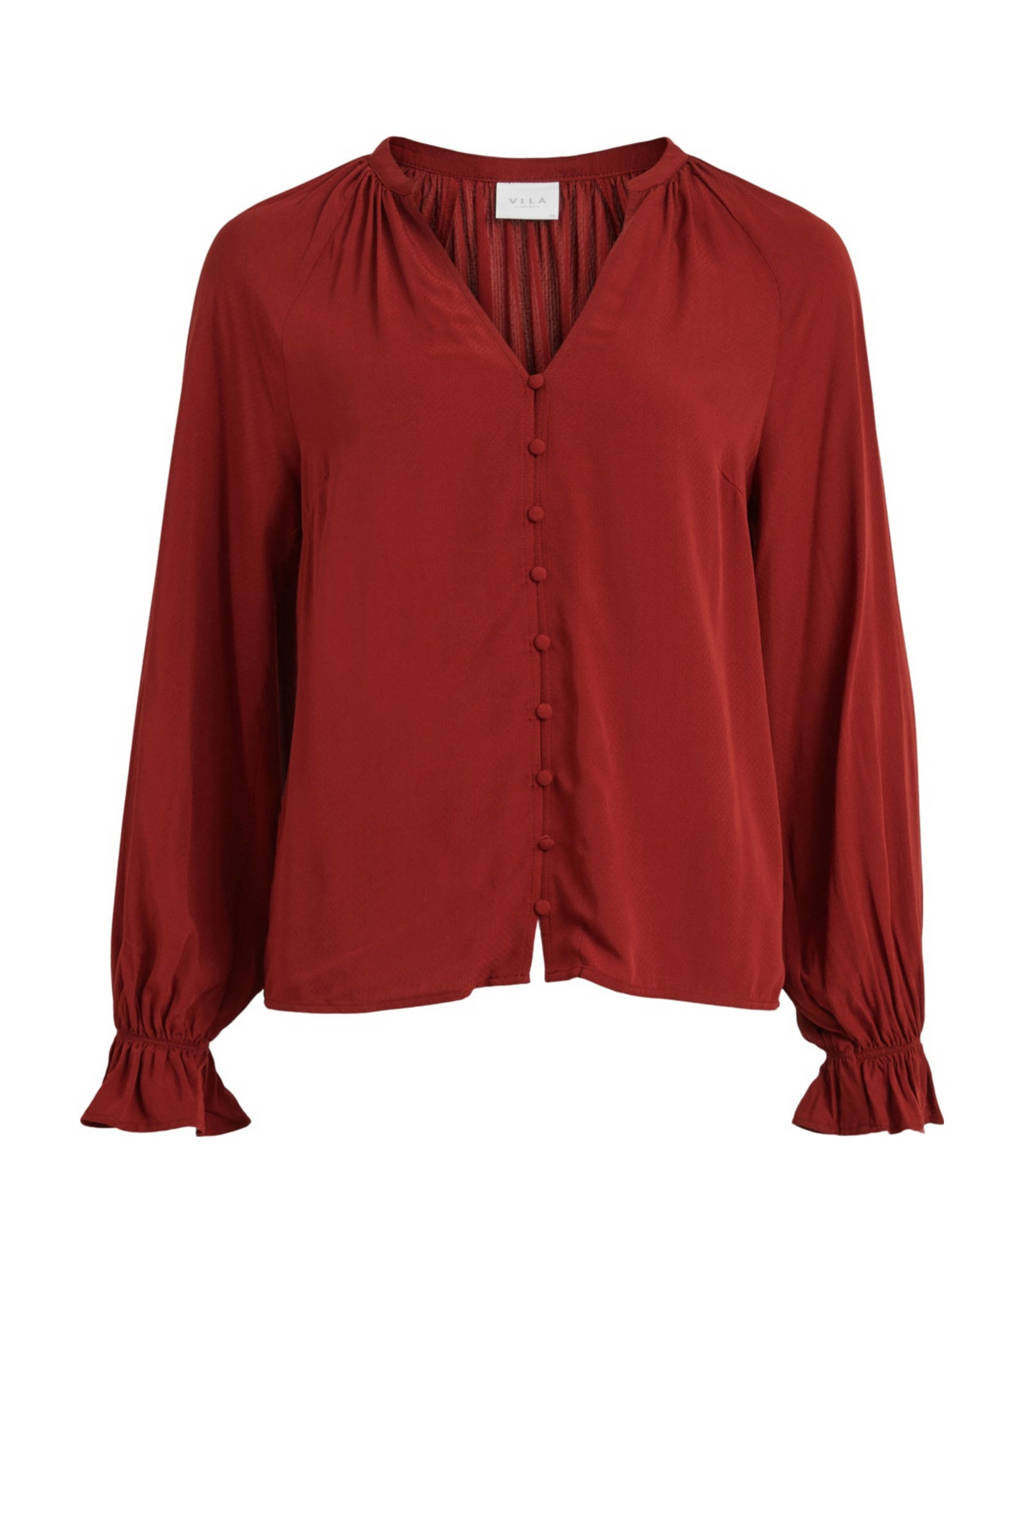 Donkerrode dames VILA blouse van viscose met lange mouwen, V-hals, knoopsluiting en ballonmouwen